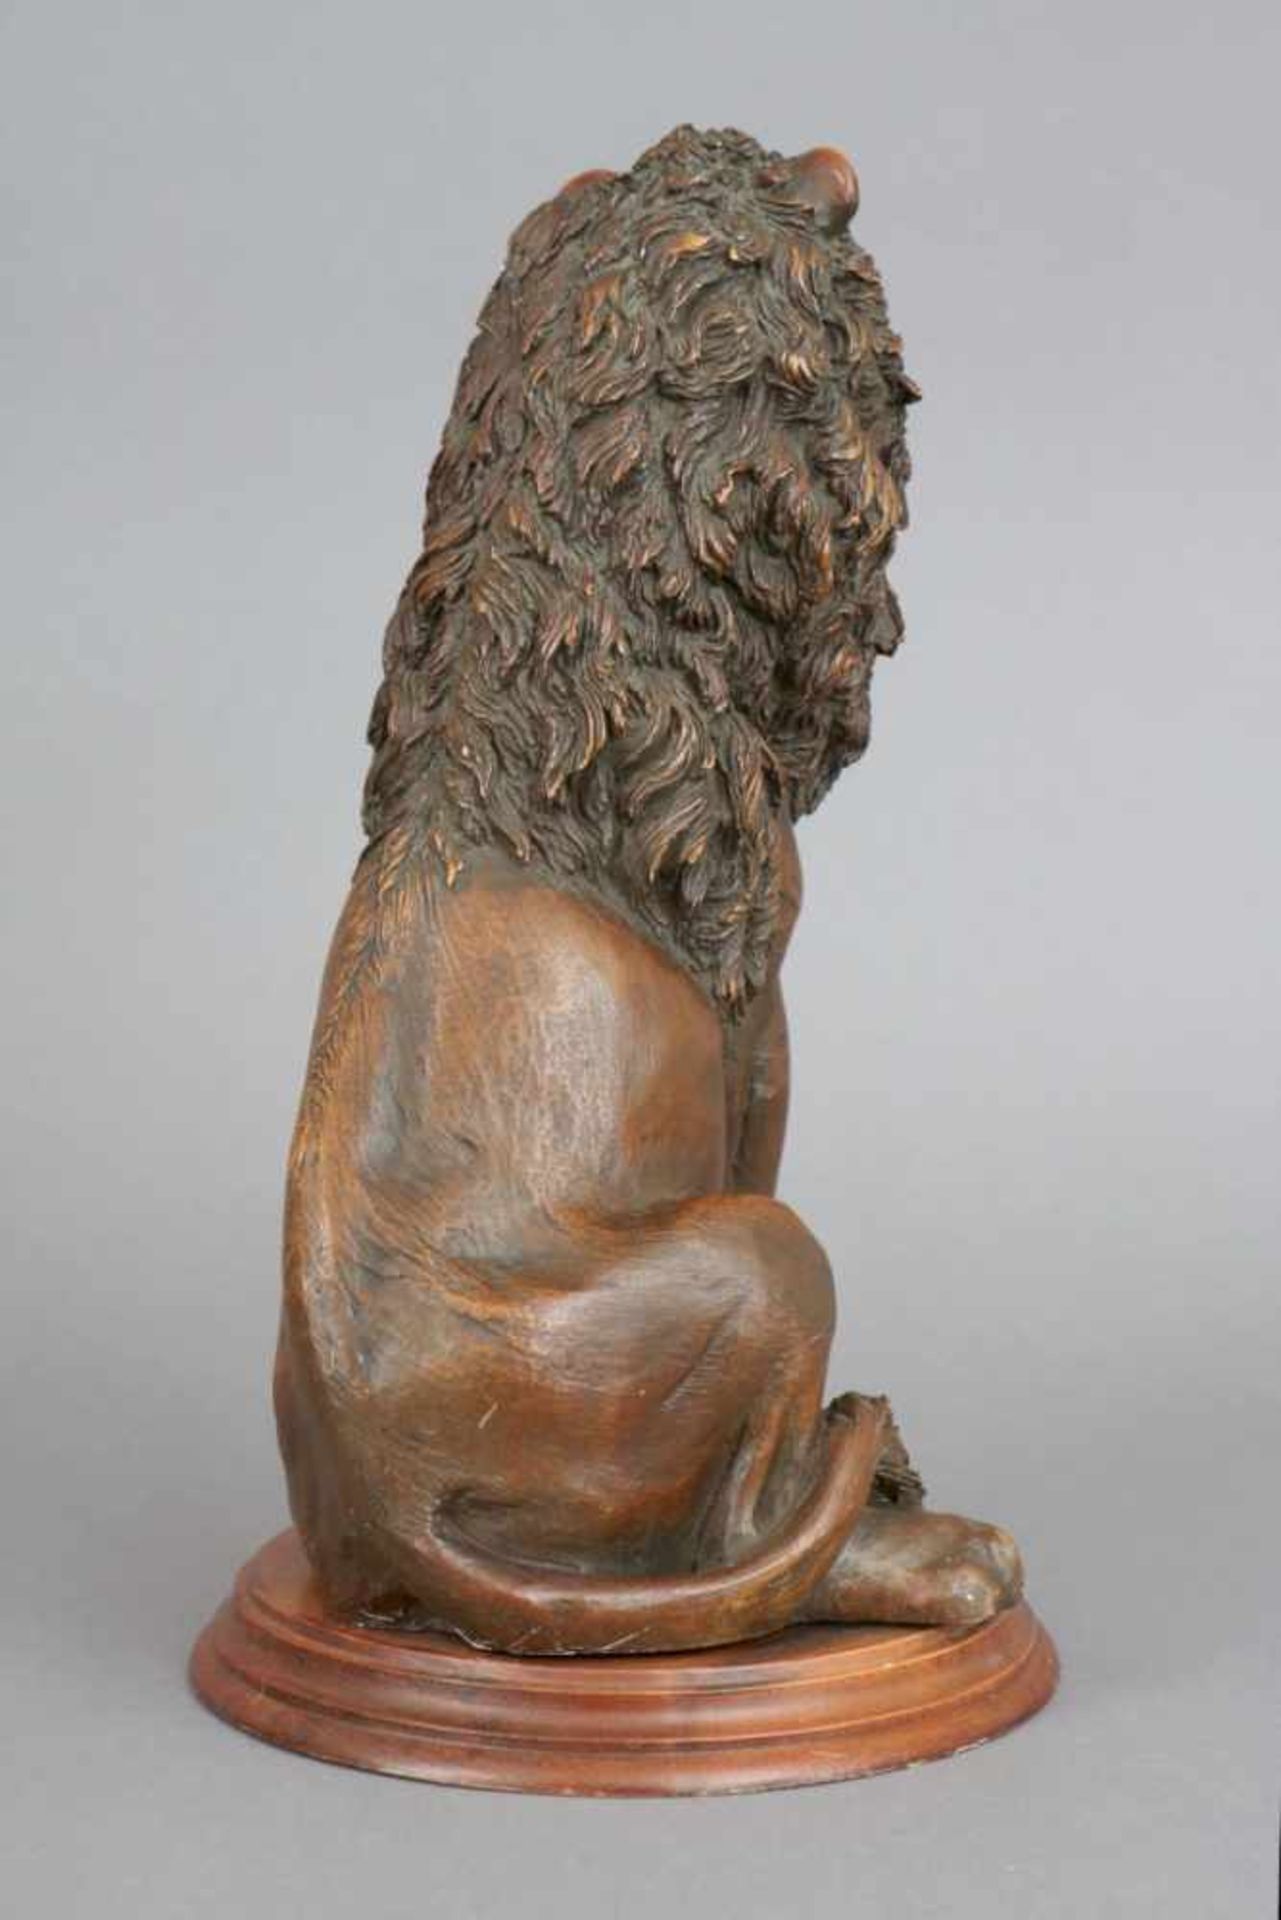 Gußfigur eines sitzenden Löwenbraun patiniert, auf rundem, profiliertem Holzsockel montiert, - Bild 2 aus 2